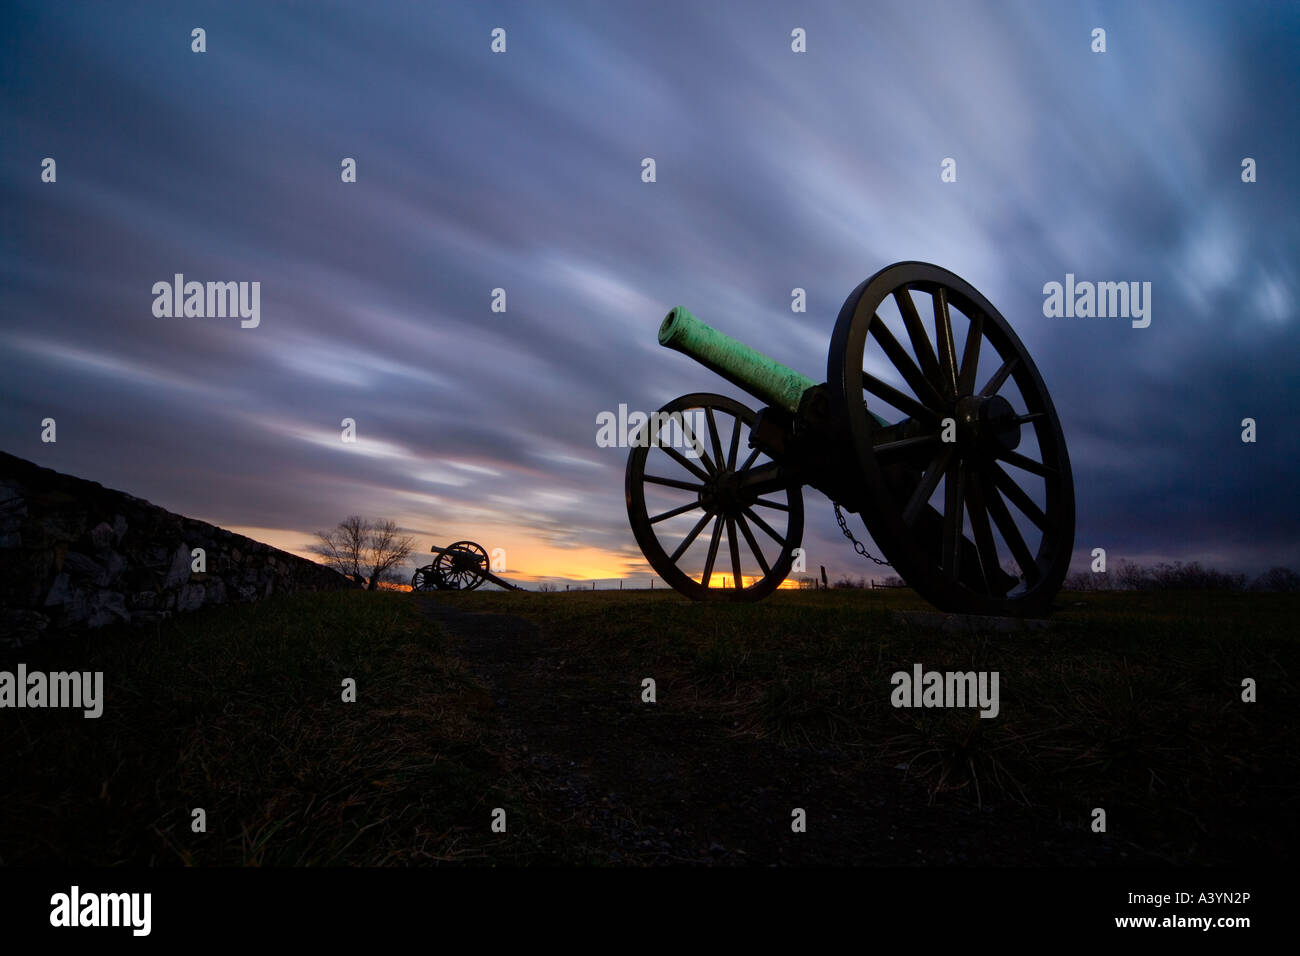 Antietam Battlefield. American Civil War Kanonen Kanone Waffen auf den finalen Angriff Ridge Steinmauer. Dramatischer Himmel bei Sonnenuntergang. Stockfoto